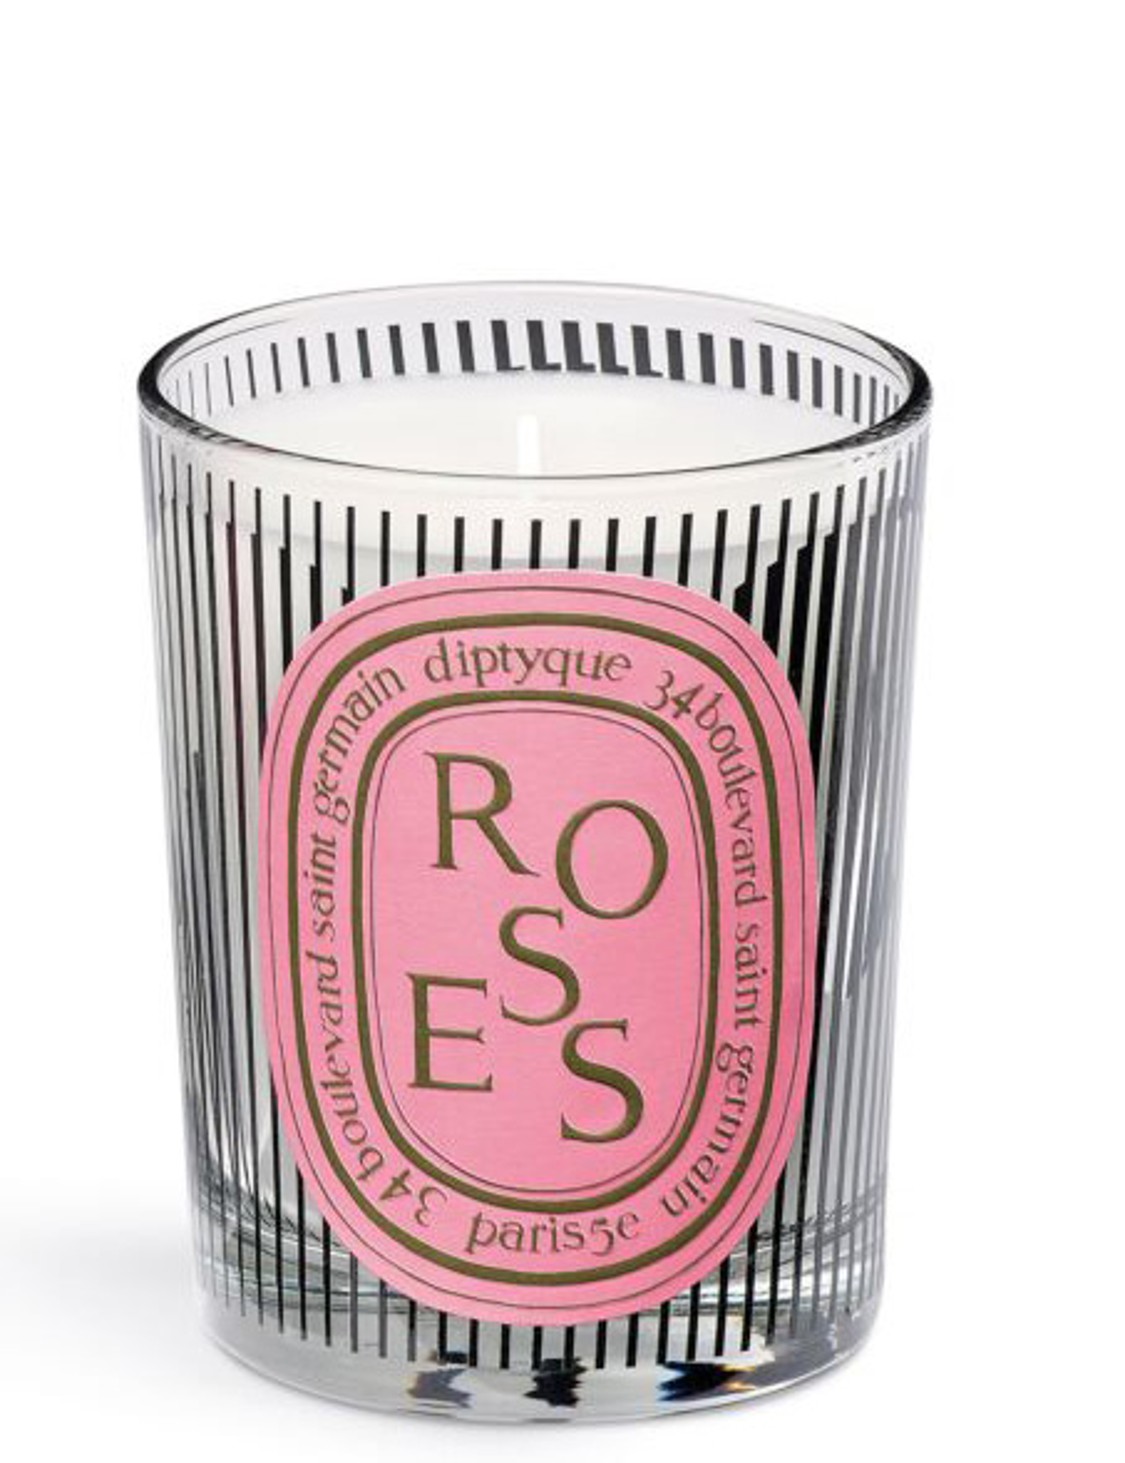 shop Diptyque  Candele: Candele Diptyque, edizione limitata: Dancing Ovals, profumo Roses, a base di petali di rosa, in vetro con disegni grafici che fanno giochi di luce.

 number 2030